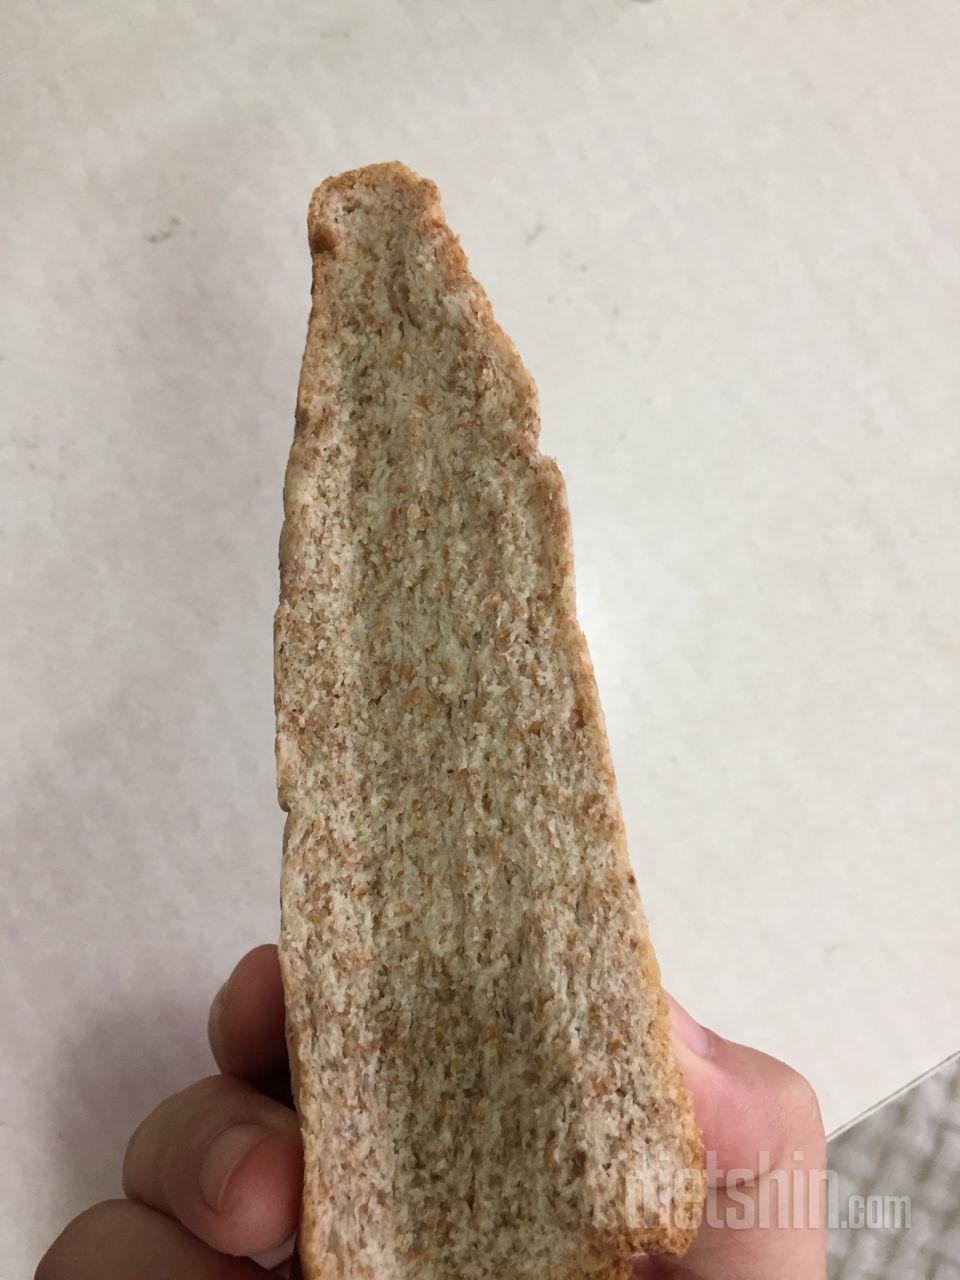 빵이 한갠줄알았습니다 식빵인데 ㅠㅠㅠ